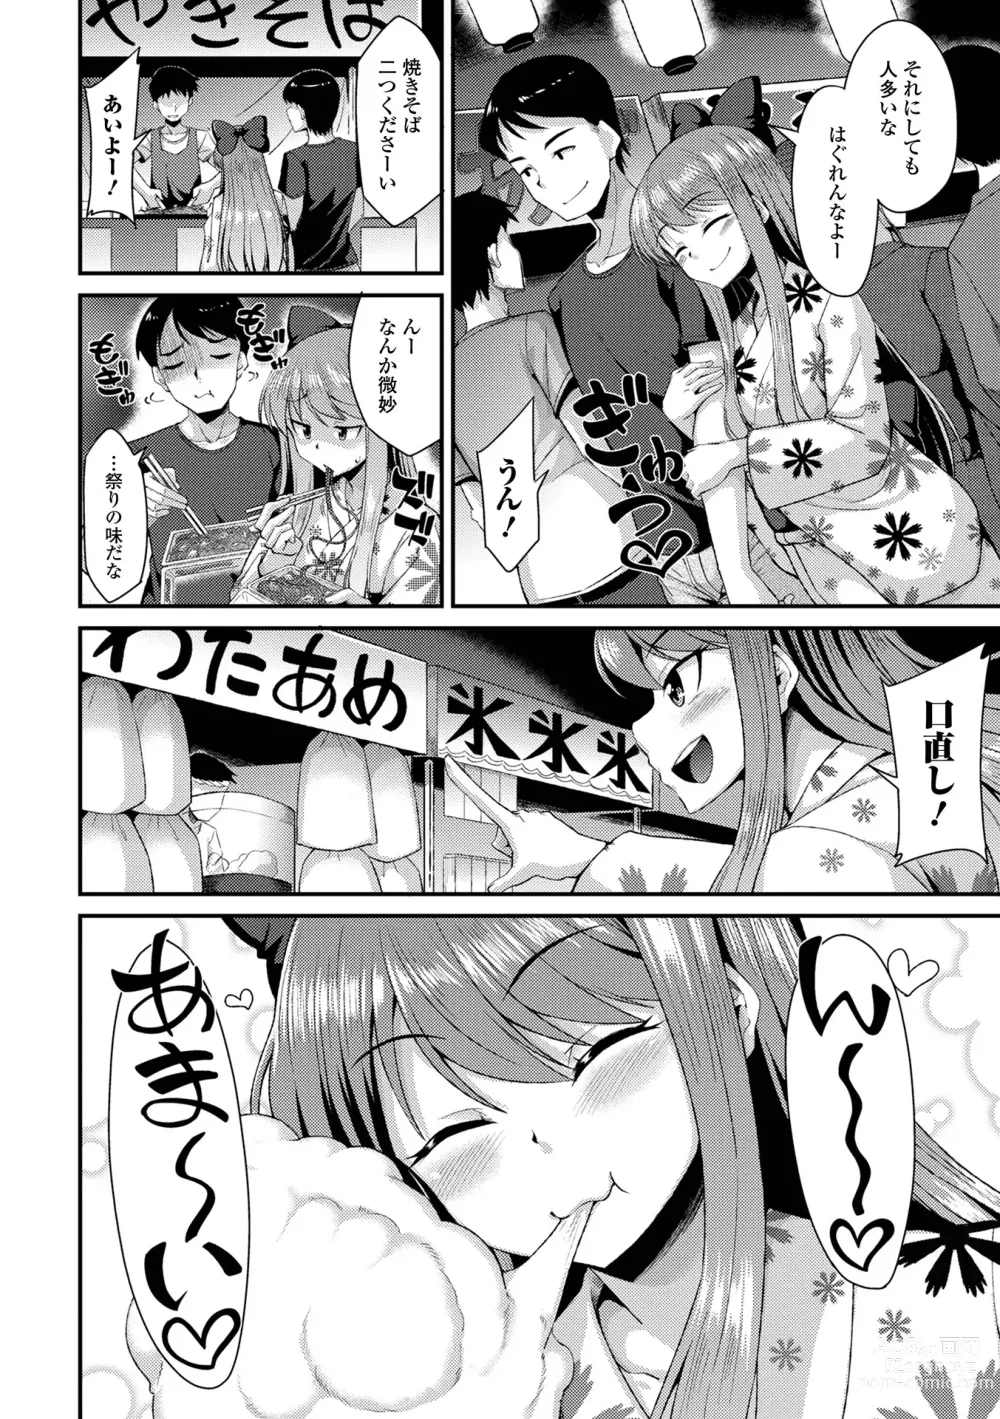 Page 4 of manga Gekkan Web Otoko no Ko-llection! S Vol. 88